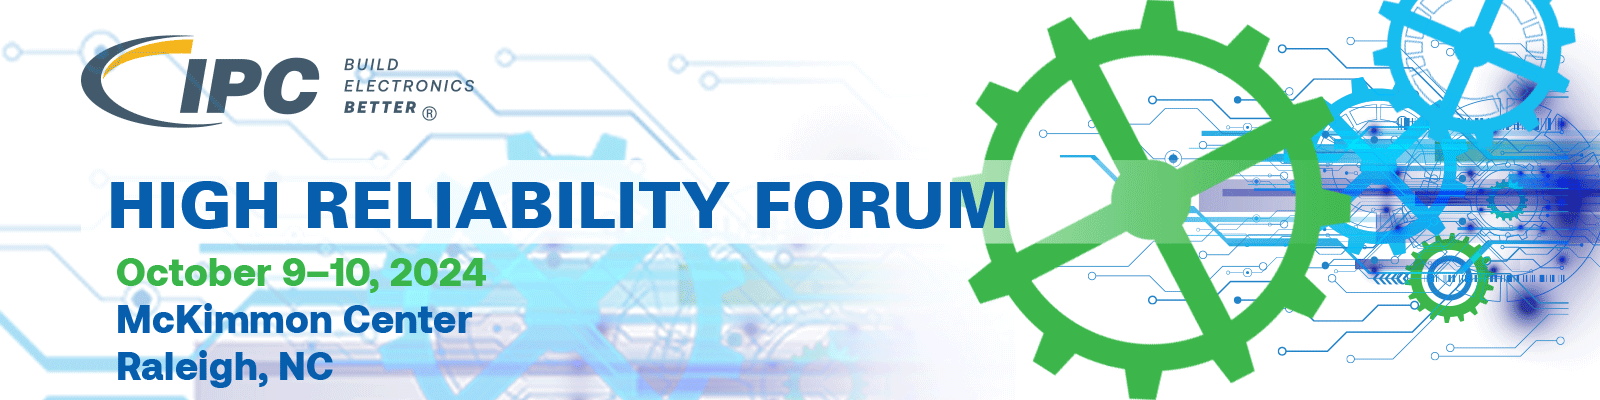 High Reliability Forum